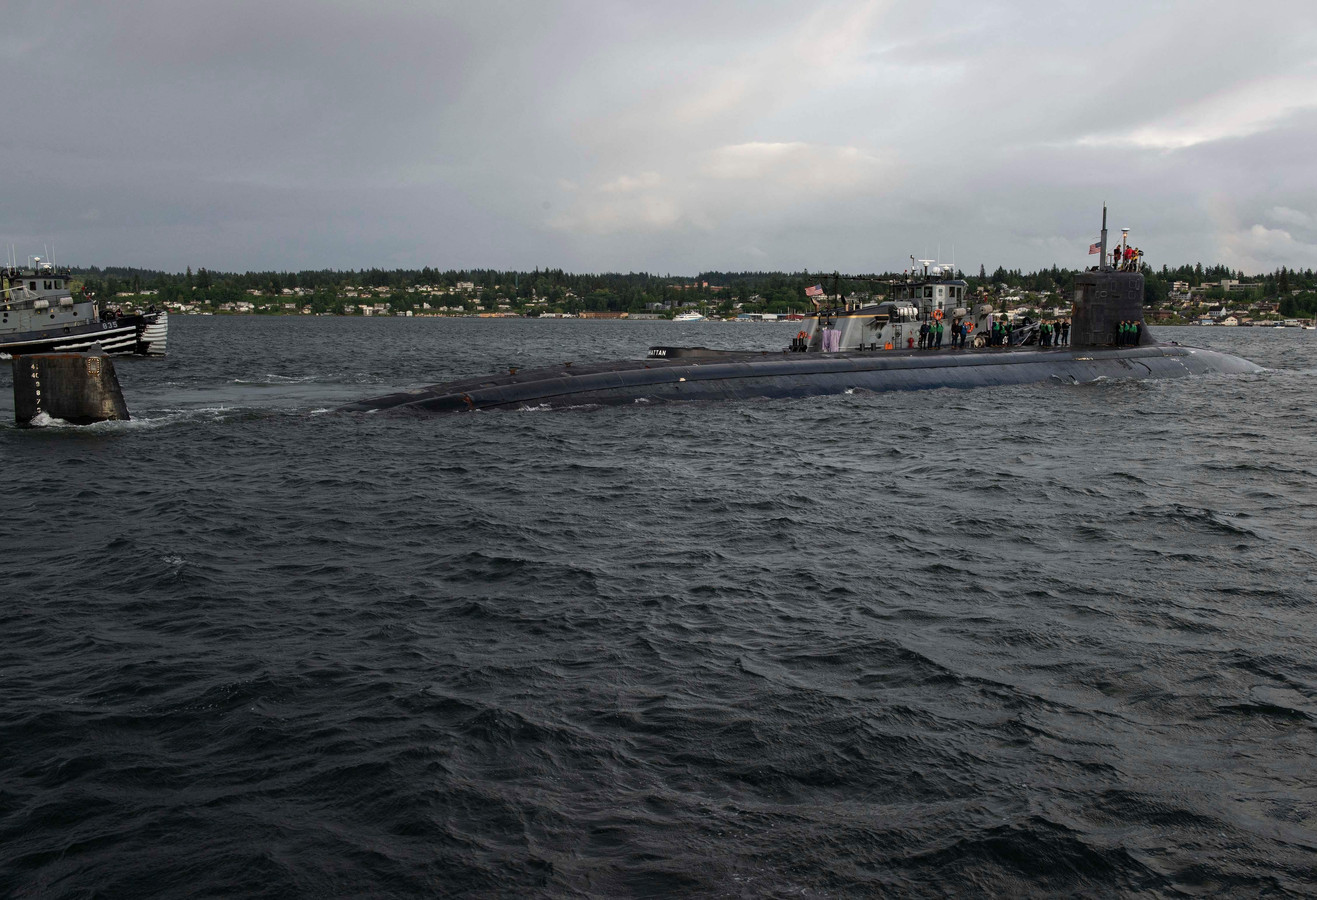 Selon le Naval Institute, un centre de réflexion proche de l’US Navy, l’USS Connecticut participait à un exercice naval international en mer de Chine méridionale lors de l’incident.